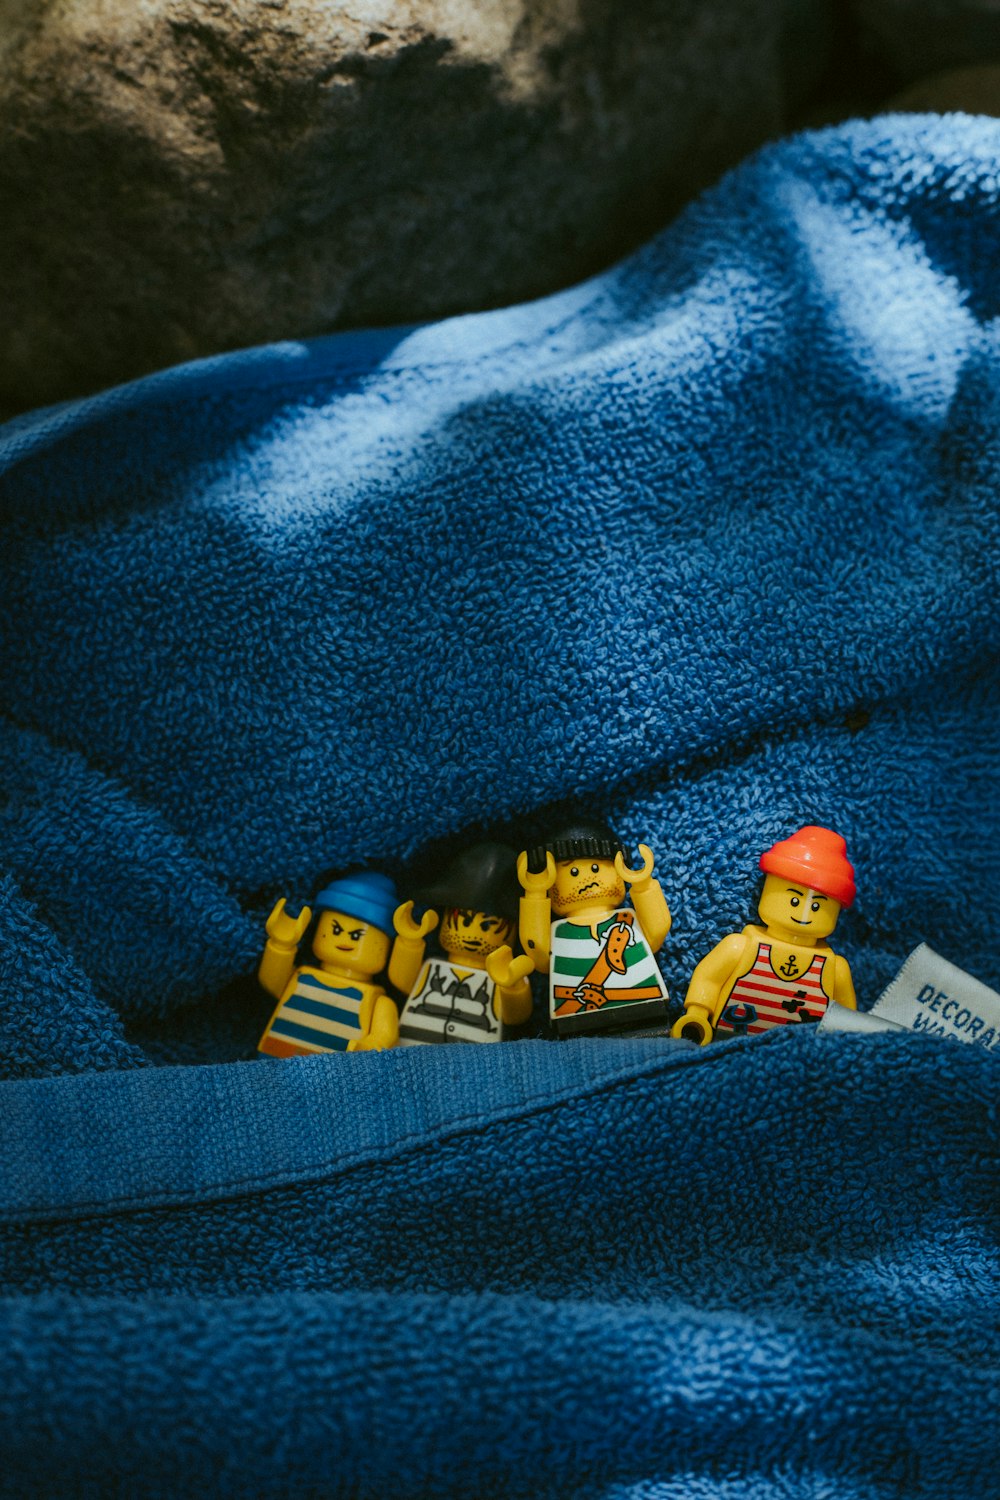 lego mini figure on blue textile